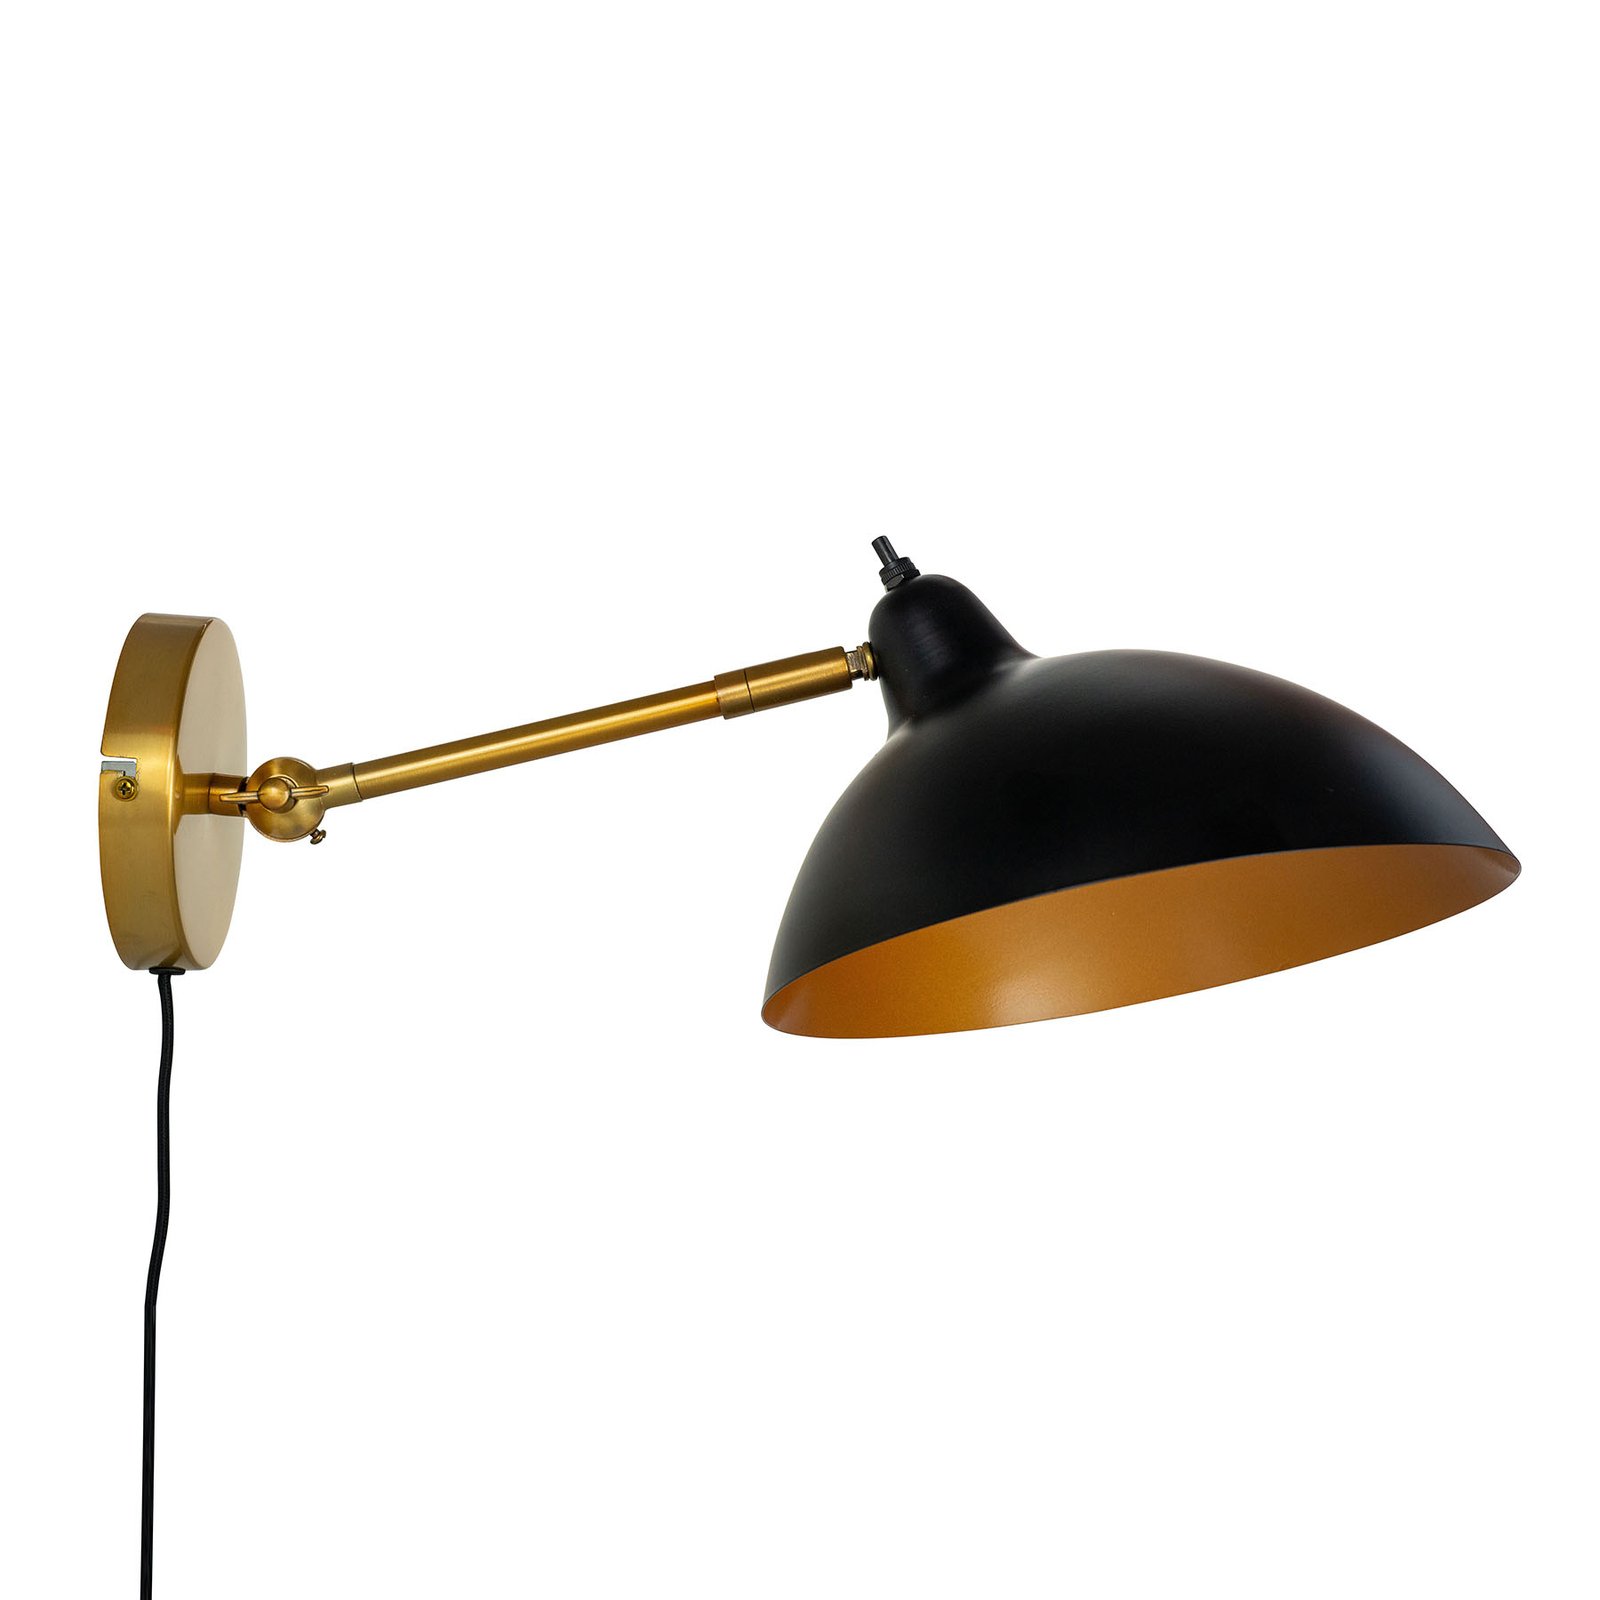 Dyberg Larsen Futura wandlamp messing/zwart